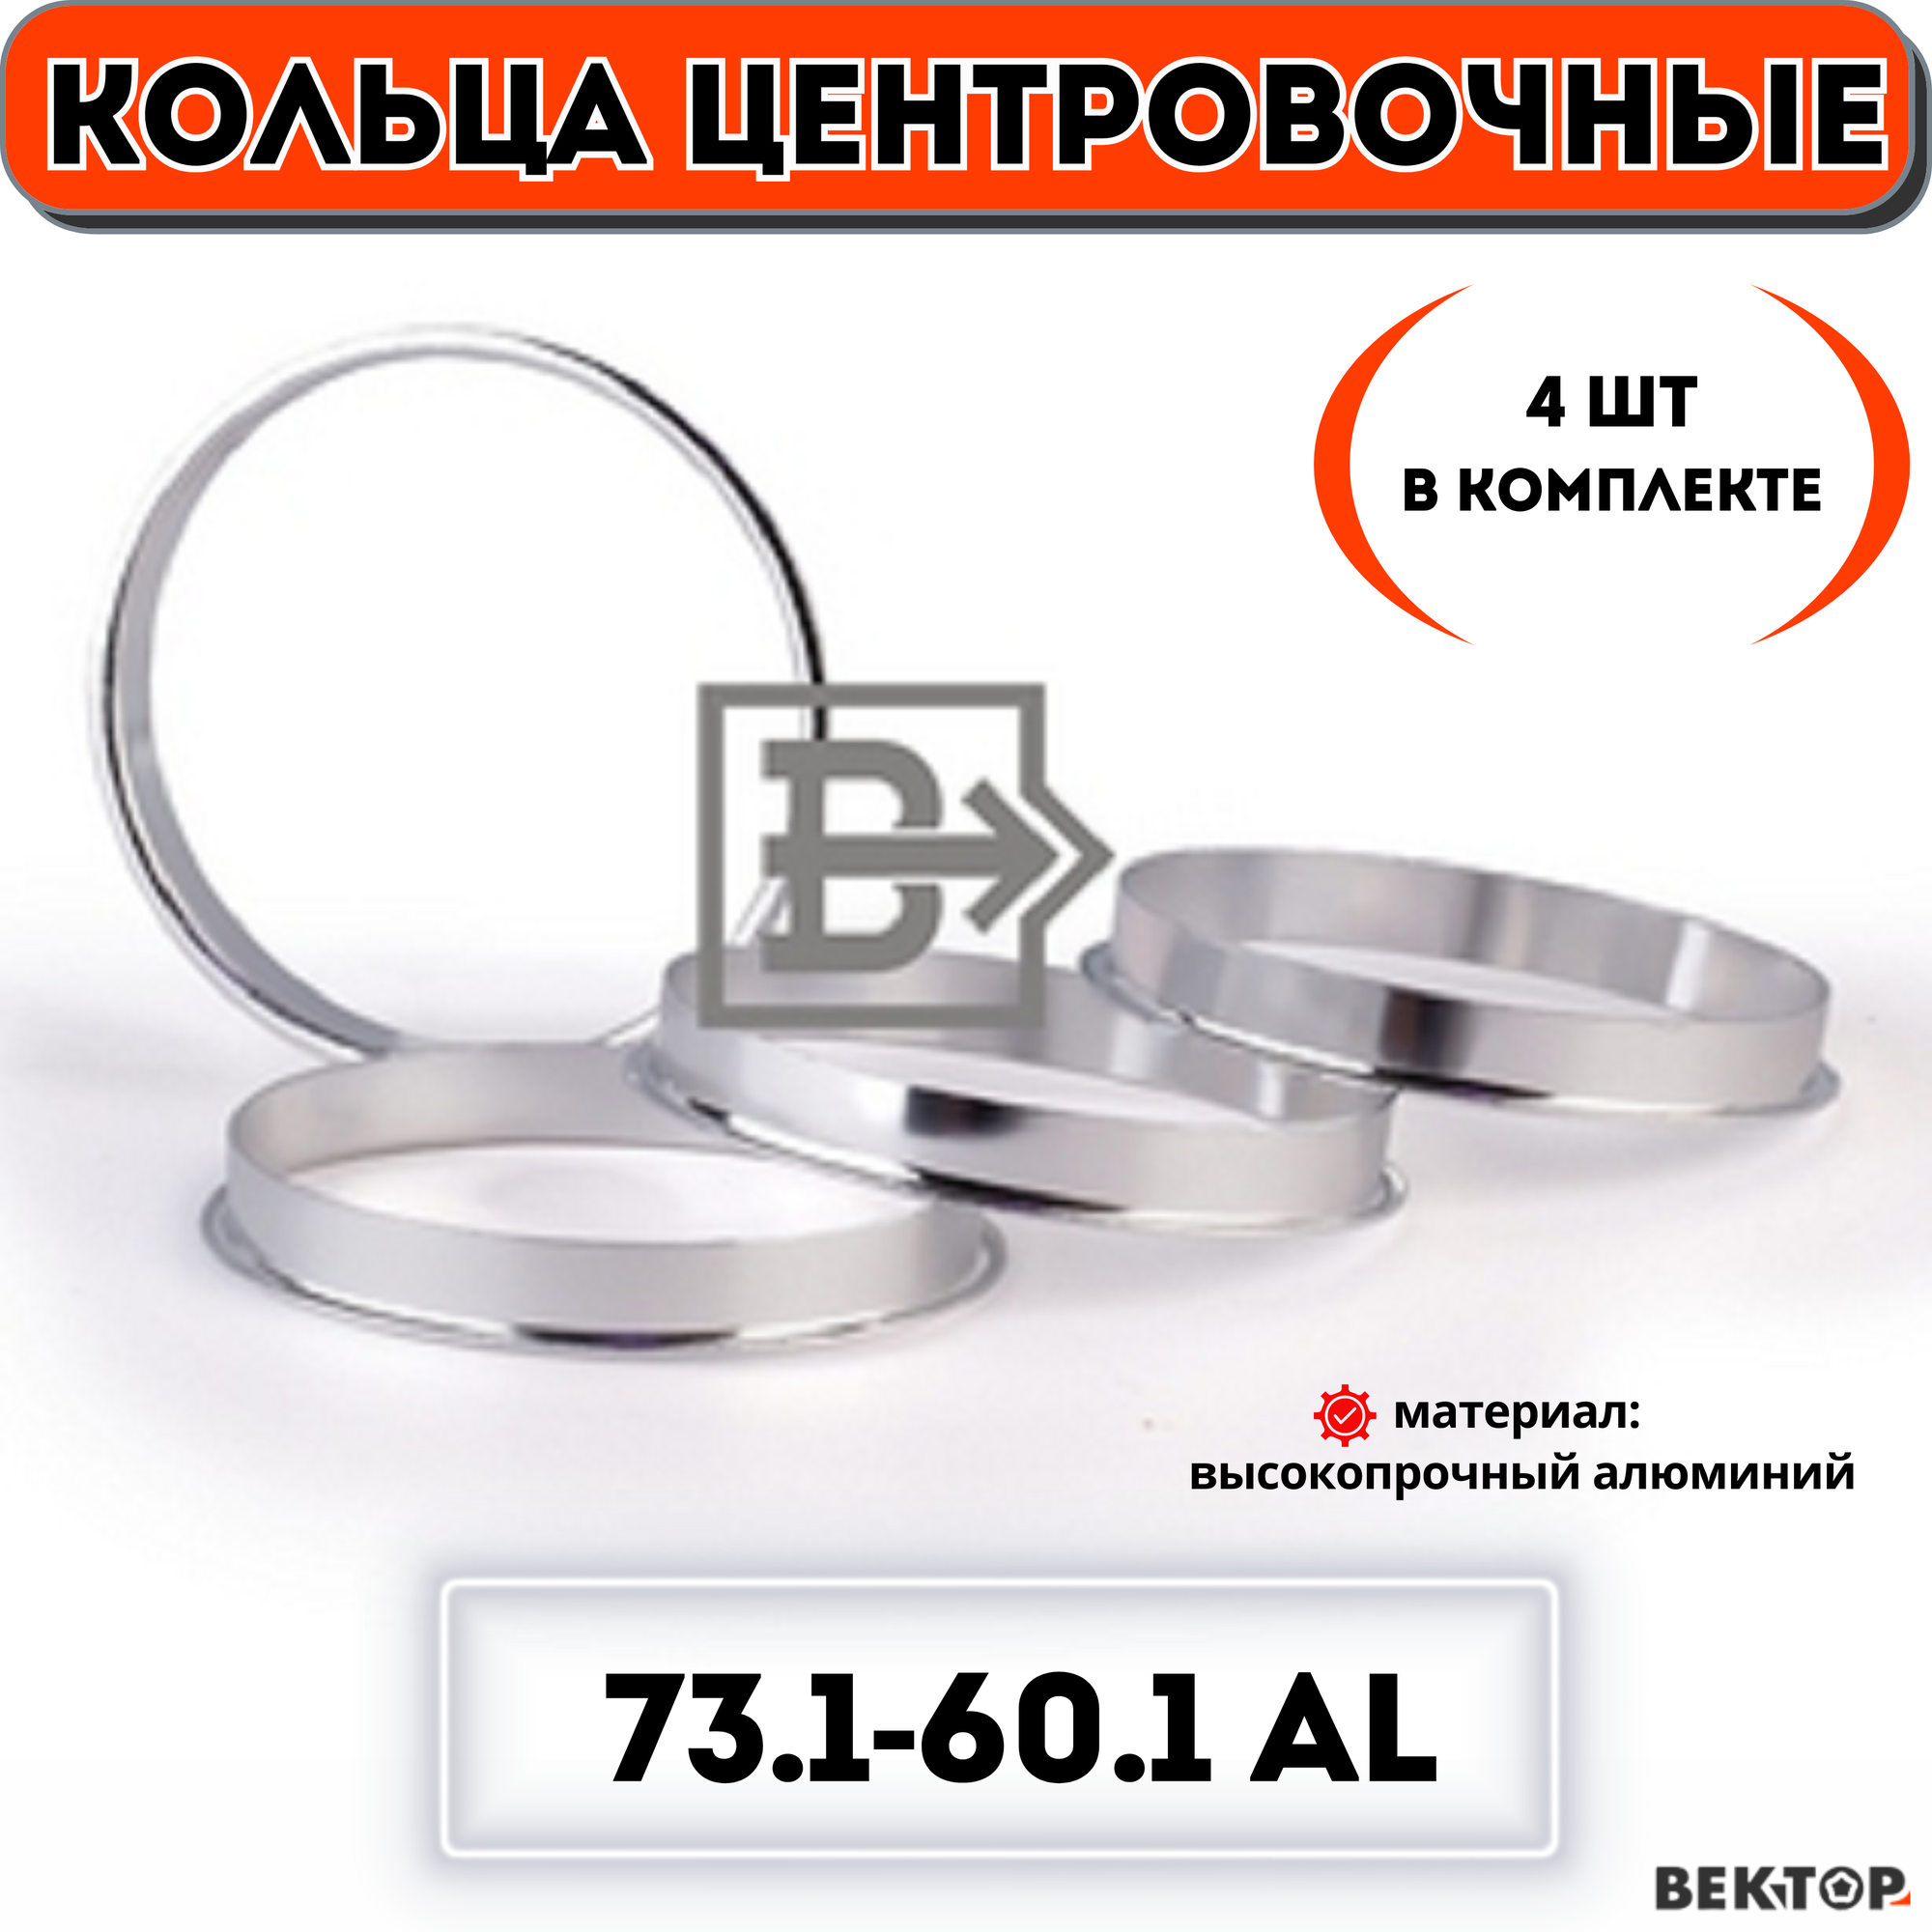 Кольца центровочные для автомобильных дисков 731-601 алюминий "вектор" (комплект 4 шт.)